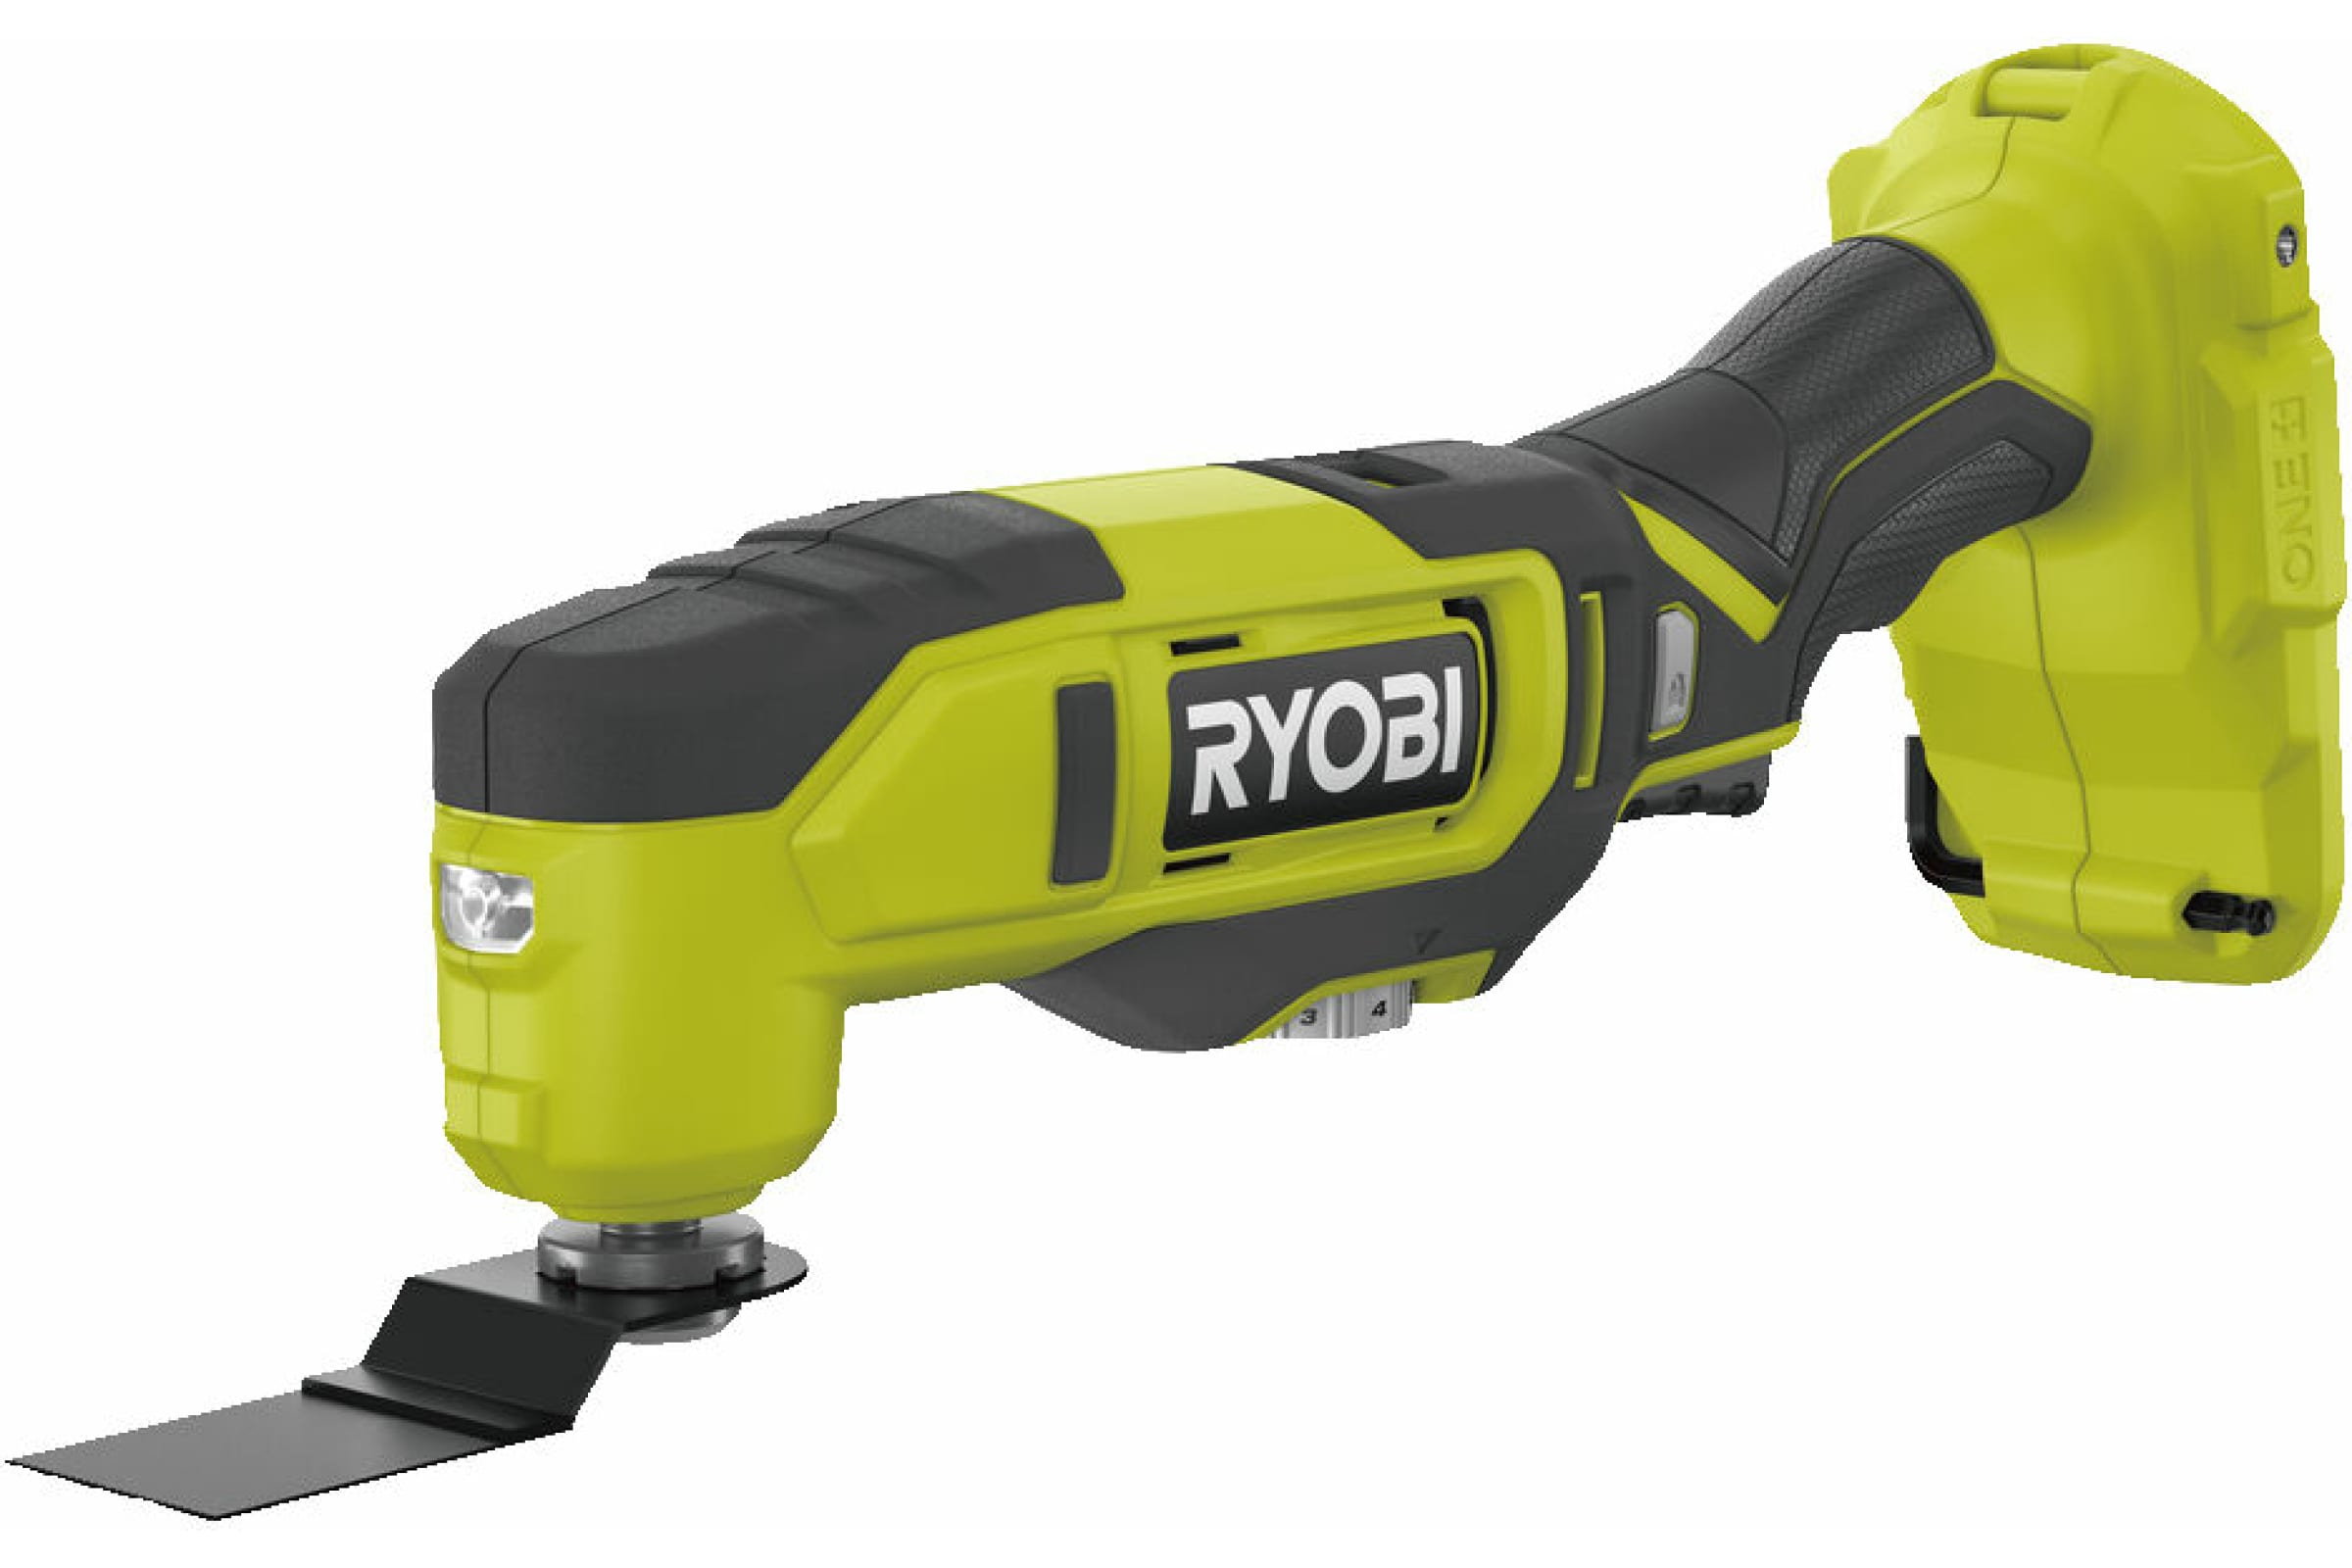 Ryobi 18В Многофункциональный инструмент RMT18-0 5133005346 эспандер ленточный многофункциональный 208 х 2 2 х 0 45 см 5 22 кг зеленый